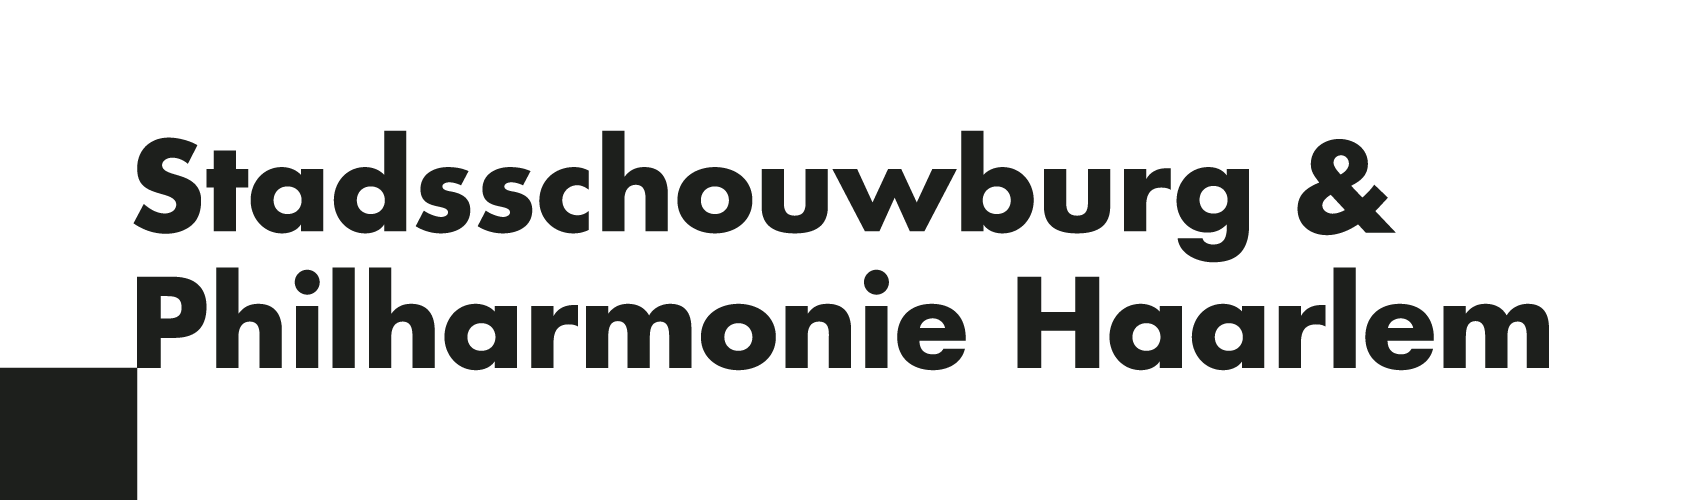 Logo - Stadsschouwburg & Philharmonie - Zwart.png